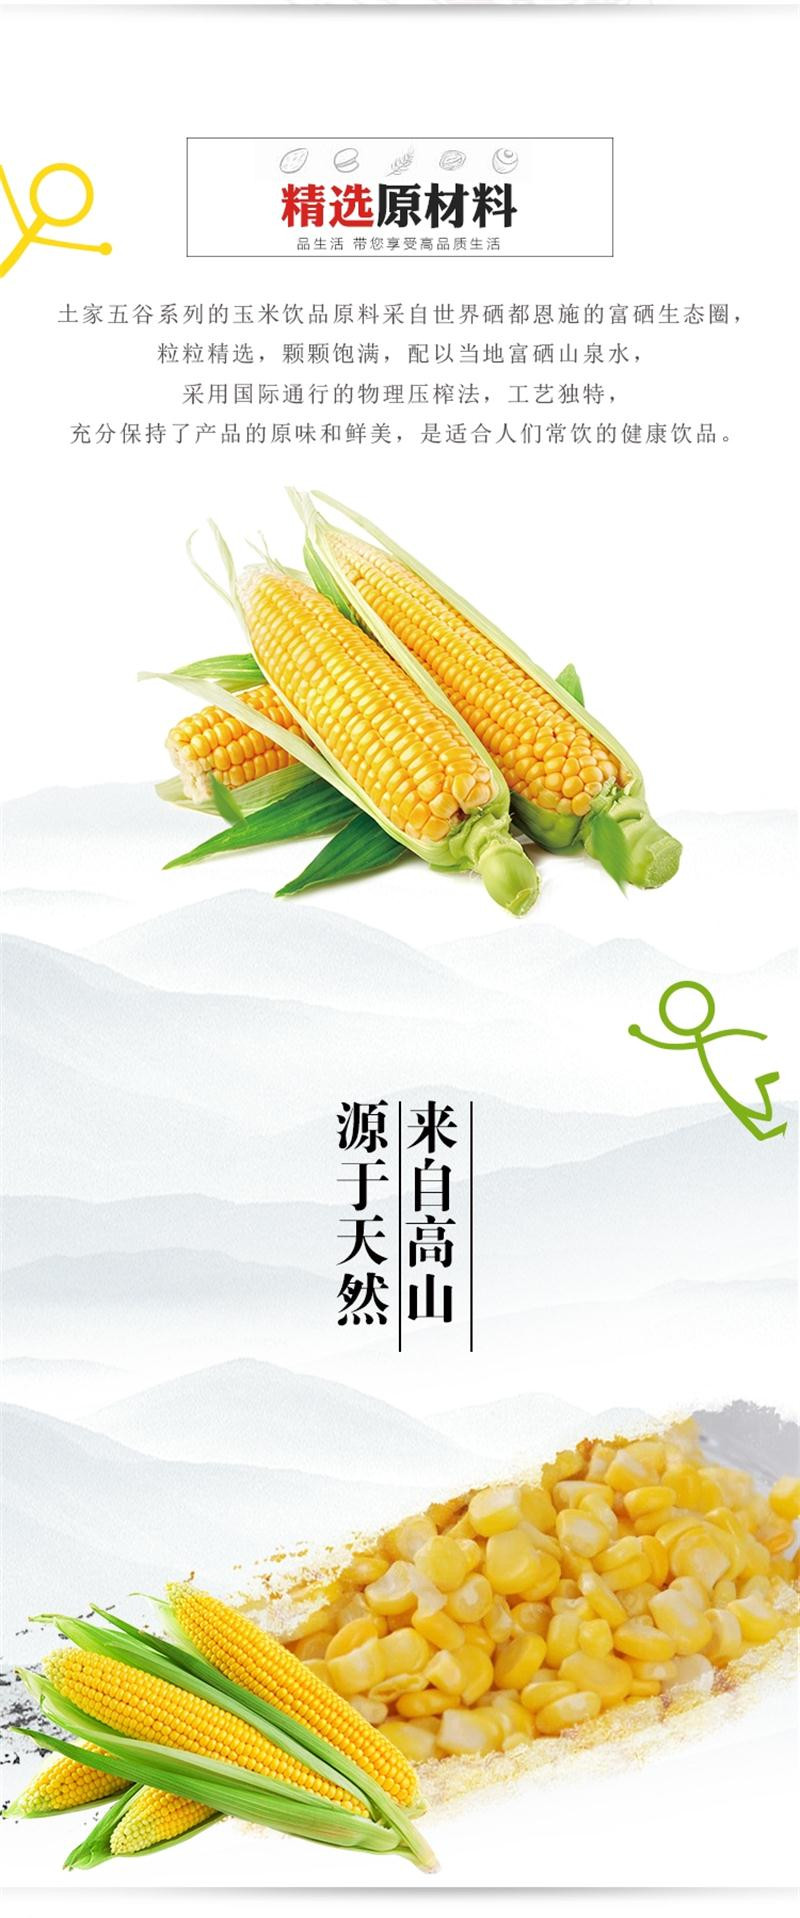  土家五谷 杂粮饮品厂家供应绿色健康玉米饮料  428g*15瓶